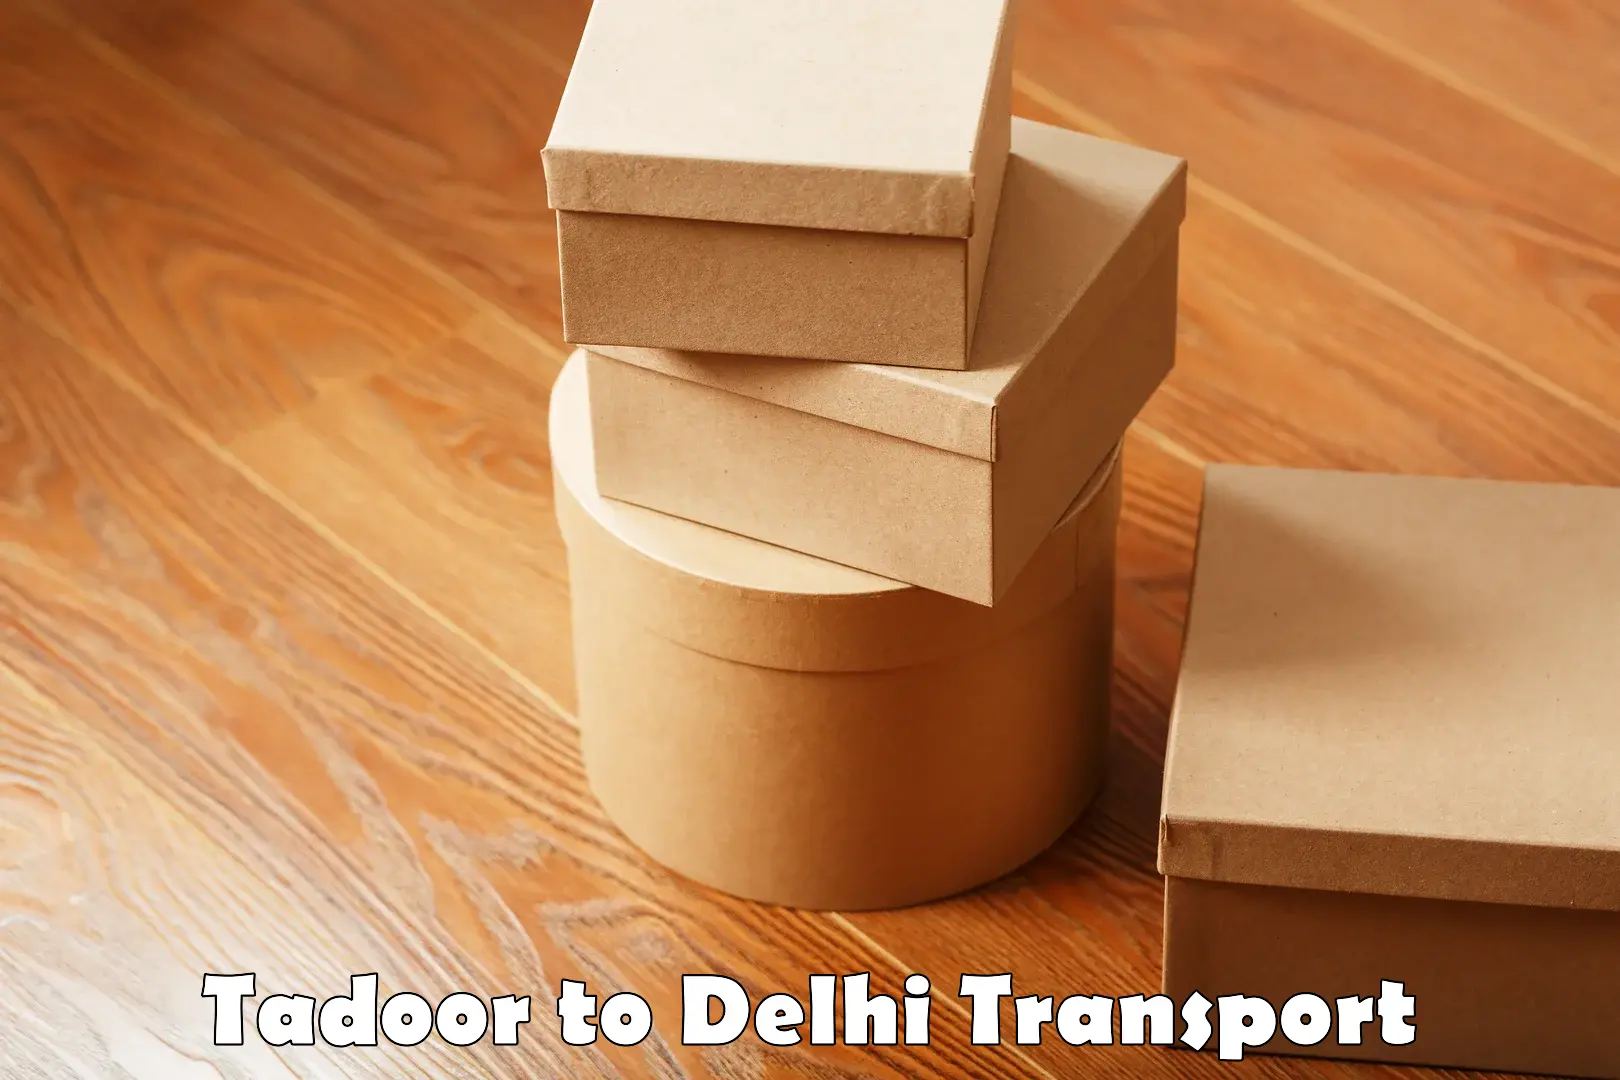 Part load transport service in India Tadoor to IIT Delhi